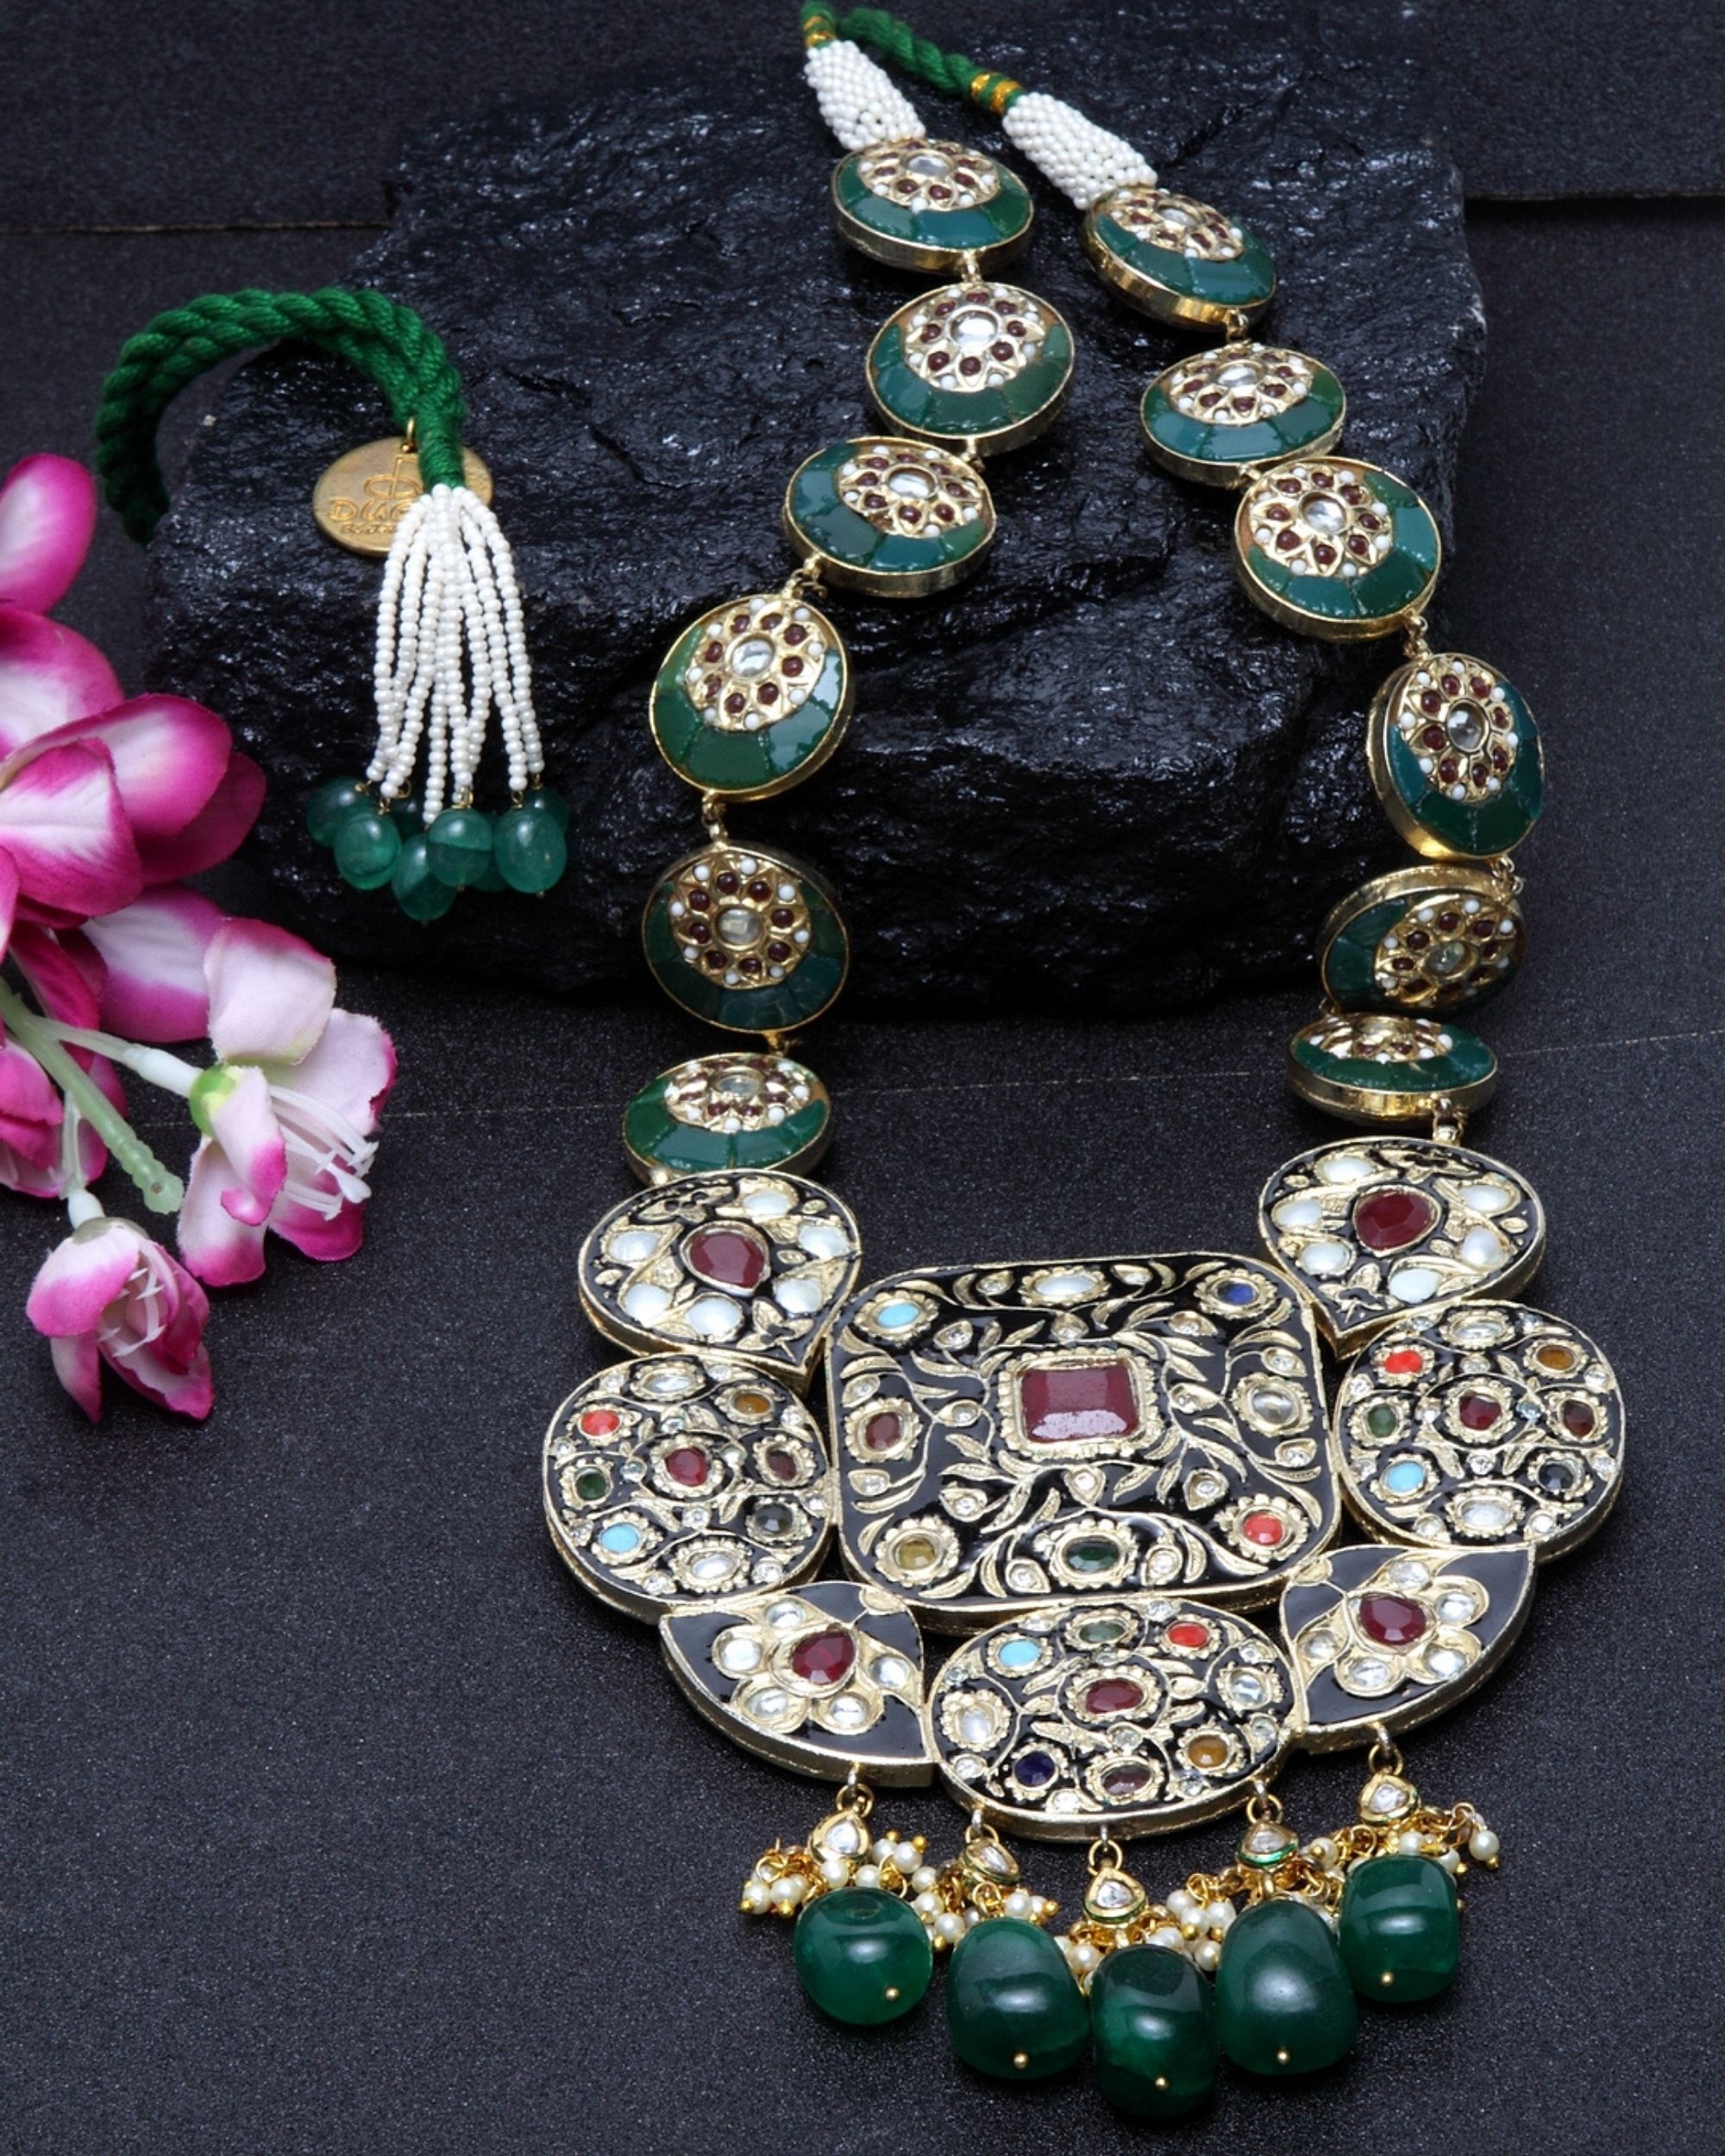 Emerald tikdas meenakari neckpiece